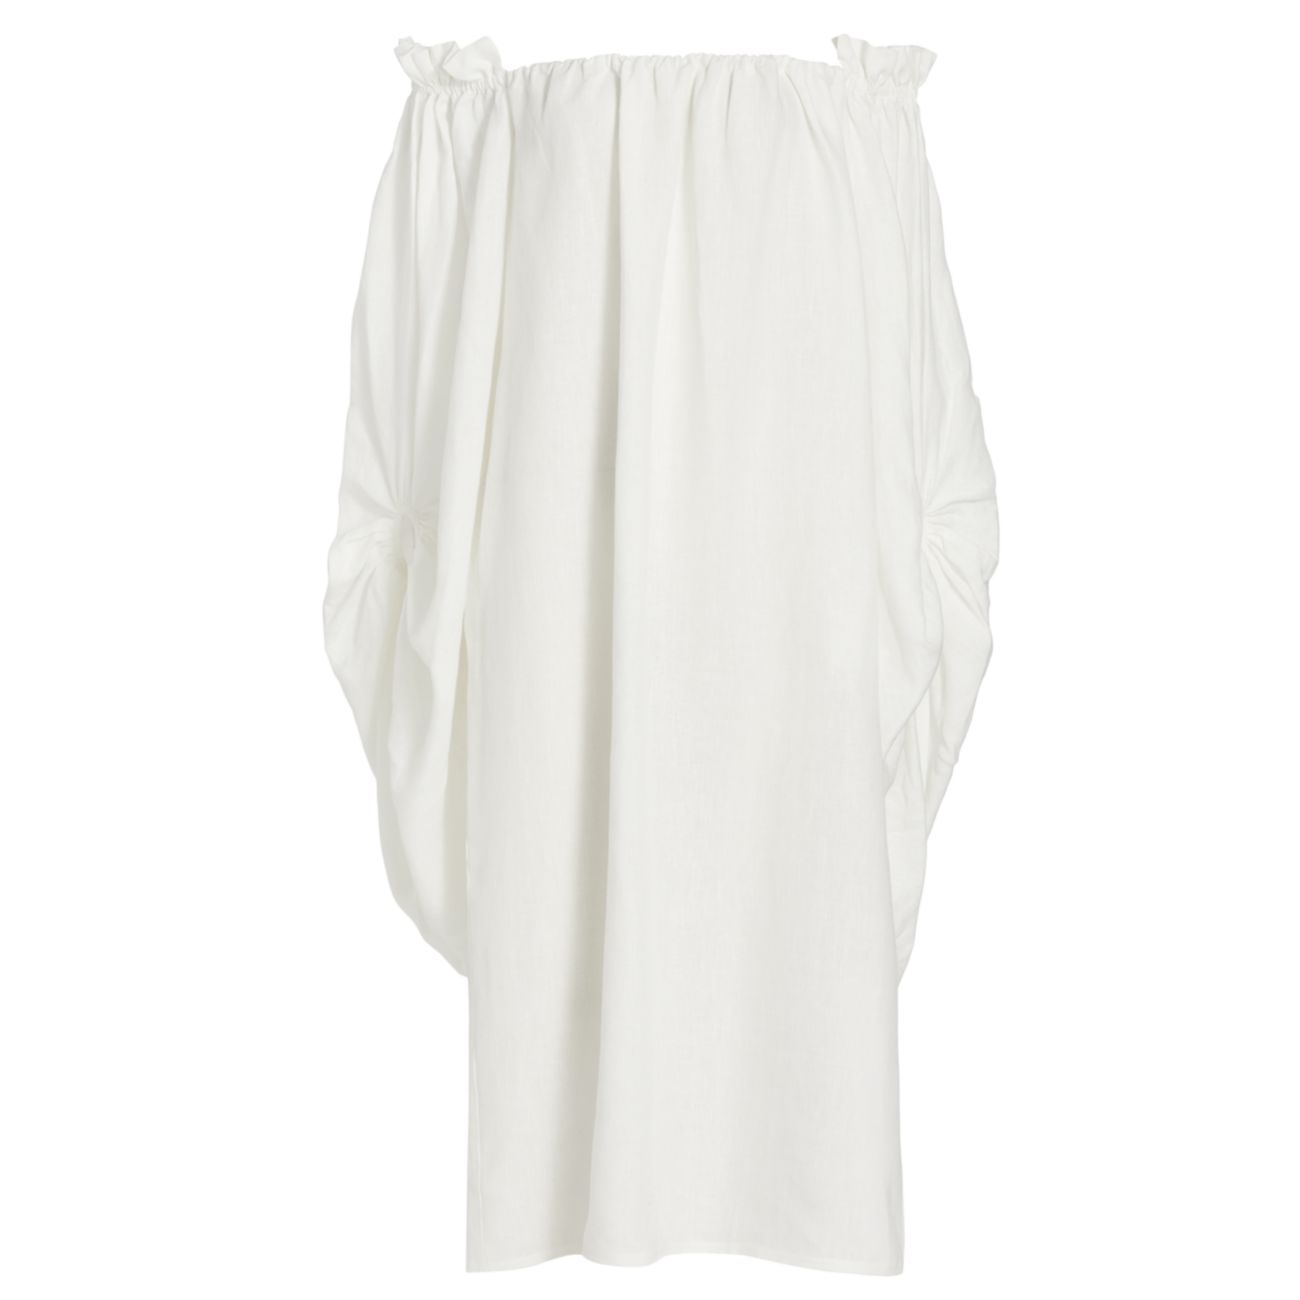 Платье свободного кроя Kendra с объемными рукавами Piece of White